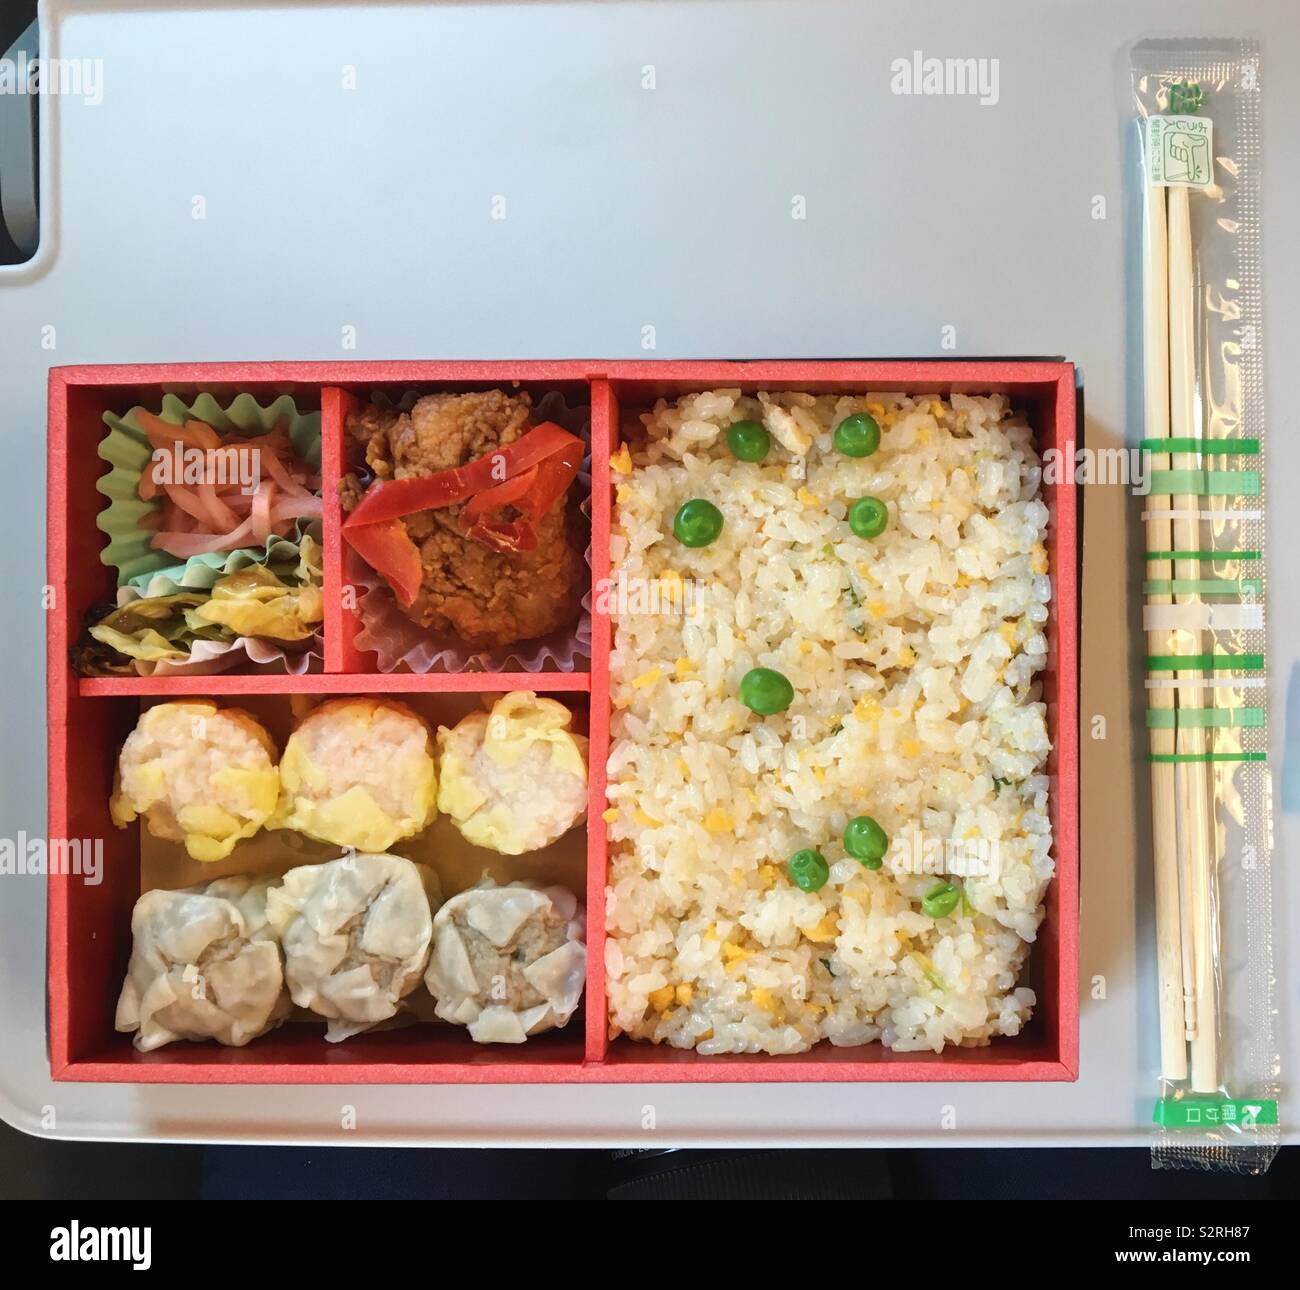 Bento Box auf einer Zugfahrt, mit Essiggurken, gebratenes Huhn, Knödel und gebratener Reis mit Erbsen Stockfoto